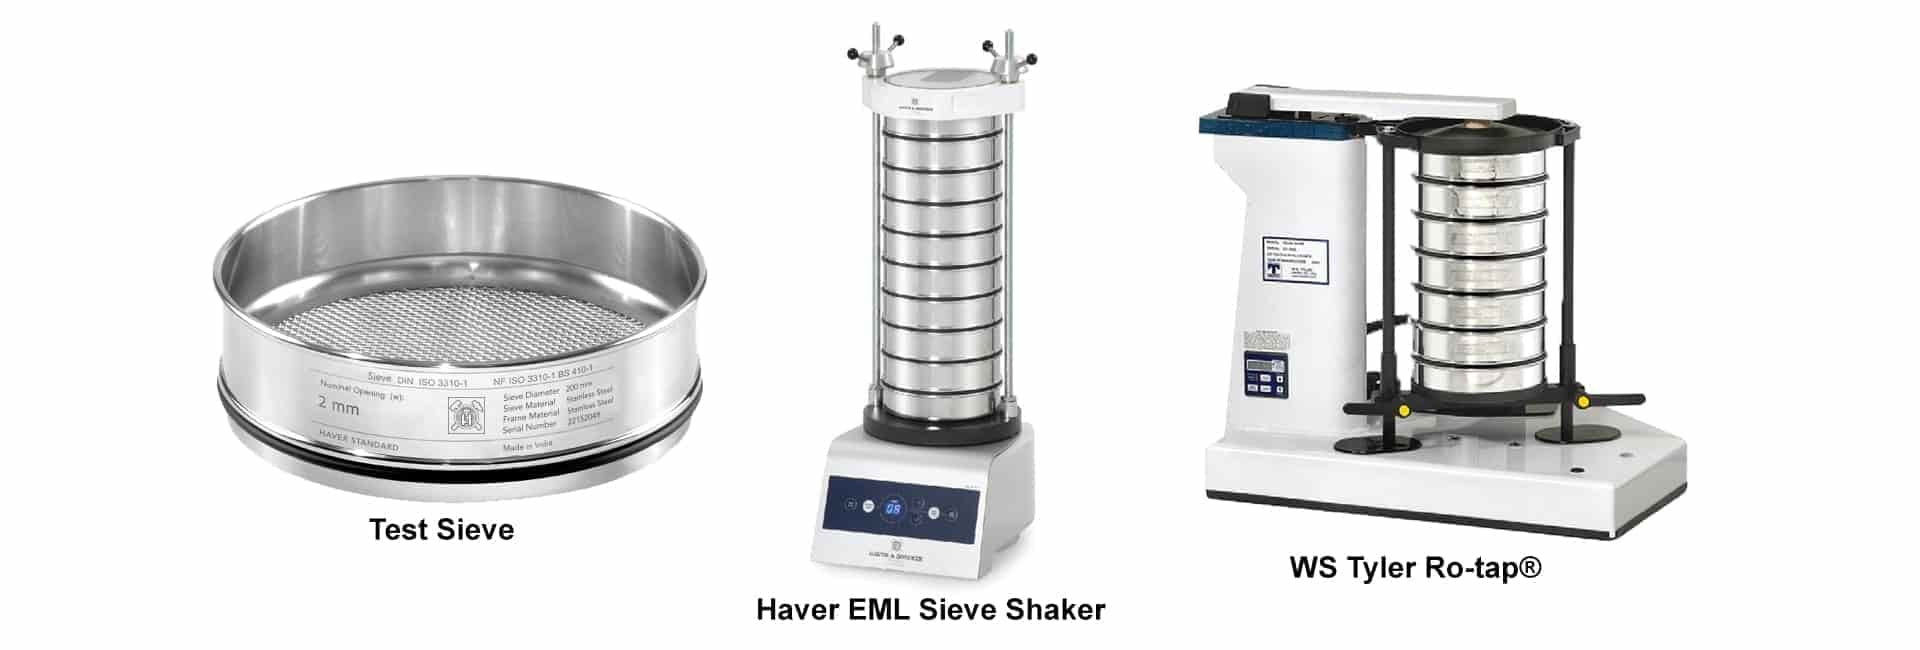 Sieves manufacturer, Hast Test Sieves manufacturer,Haver EML Test Sieve Shakers, Ro-tap Sieve Shaker, Certified sieves, Calibrated sieves manufacturer, in vadodara, gujarat, mumbai, india